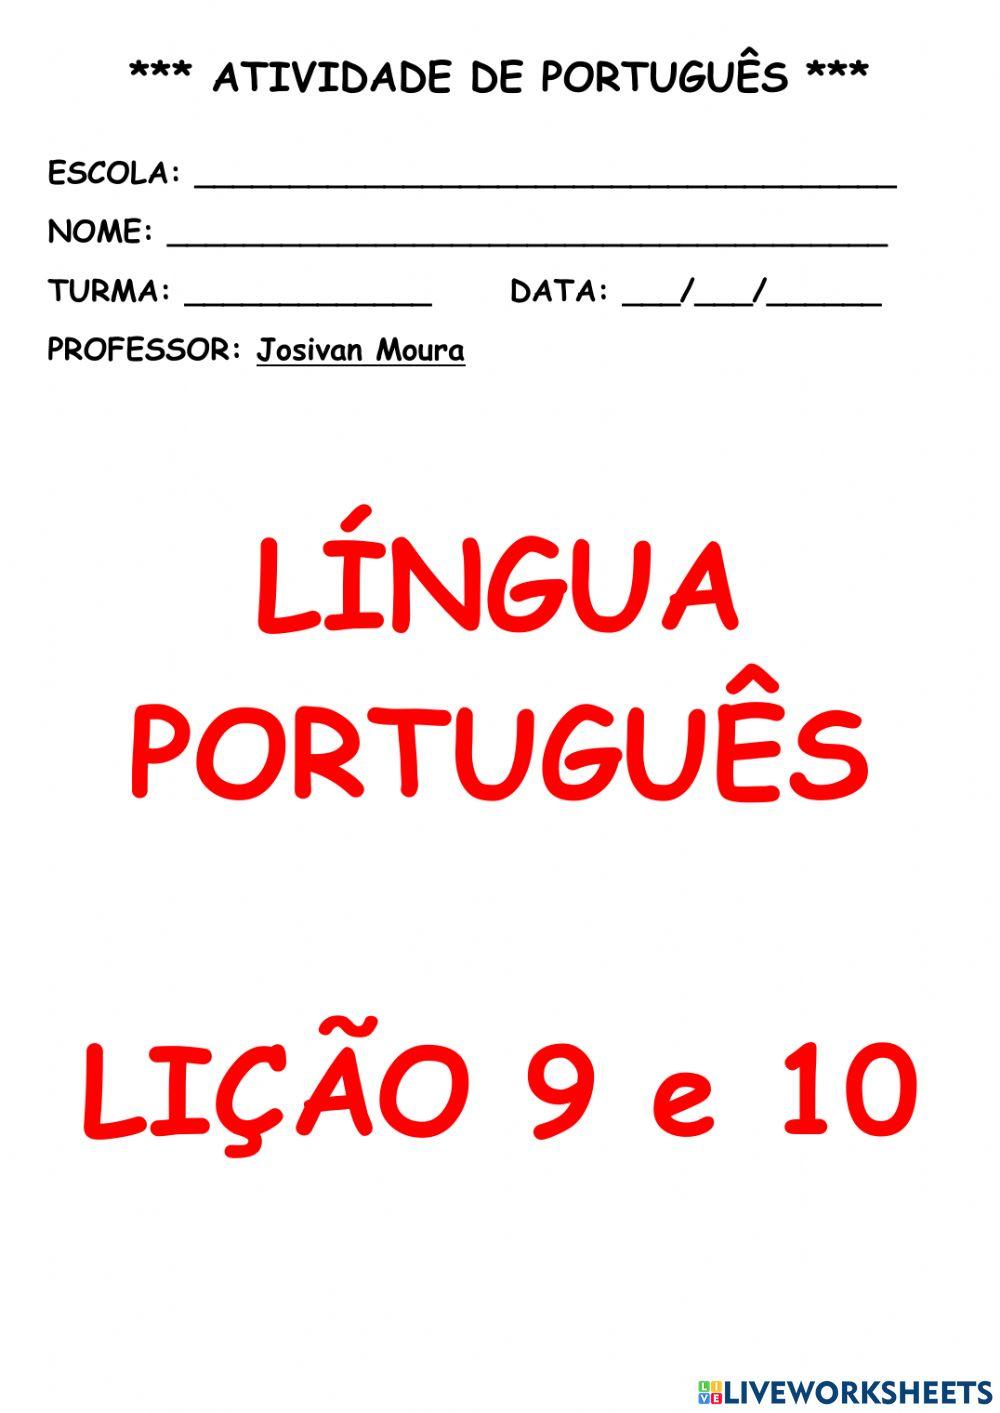 Ativ Português 12 a 17 julho 2021